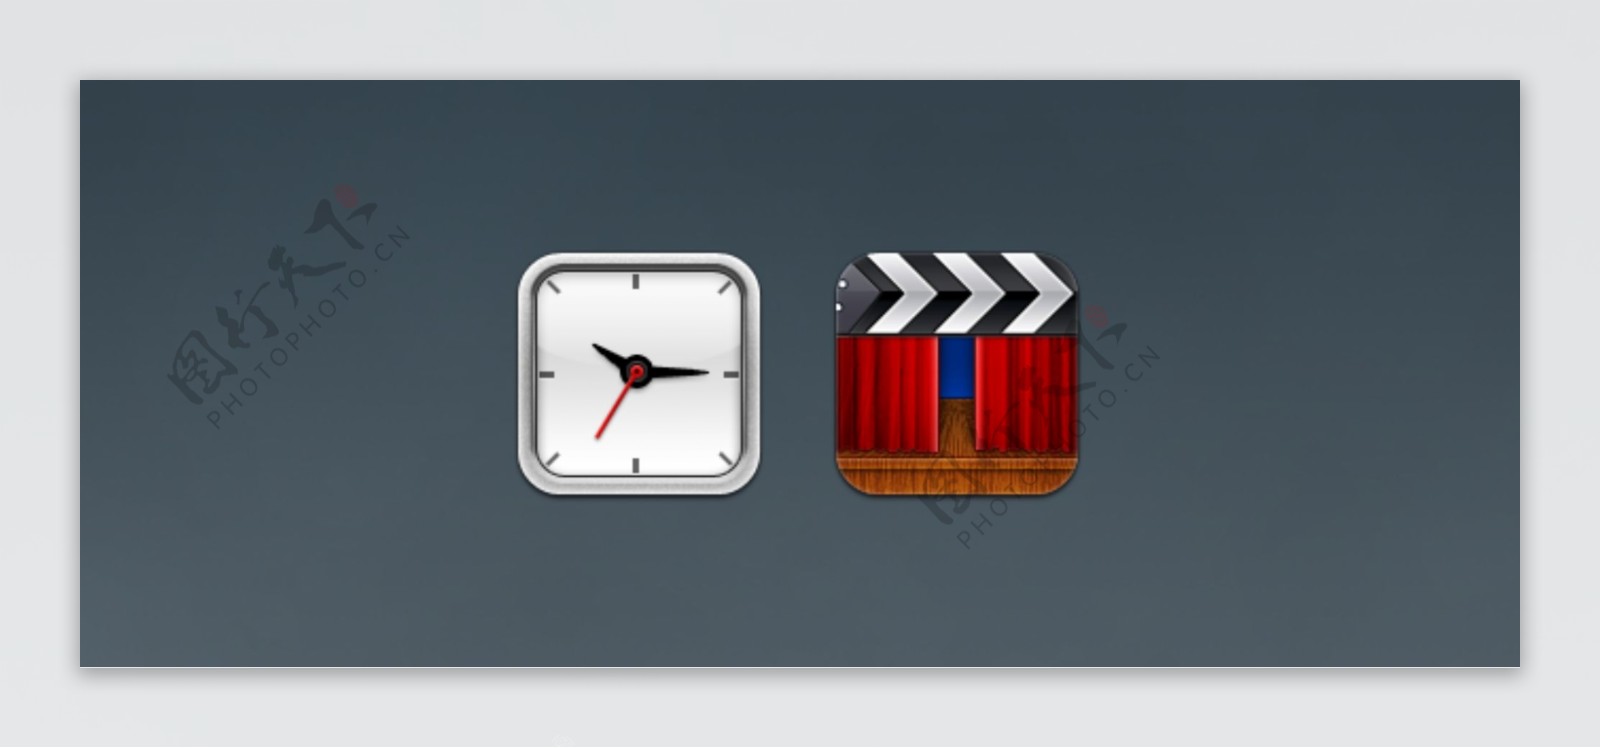 酷的时钟和电影iOS图标psd